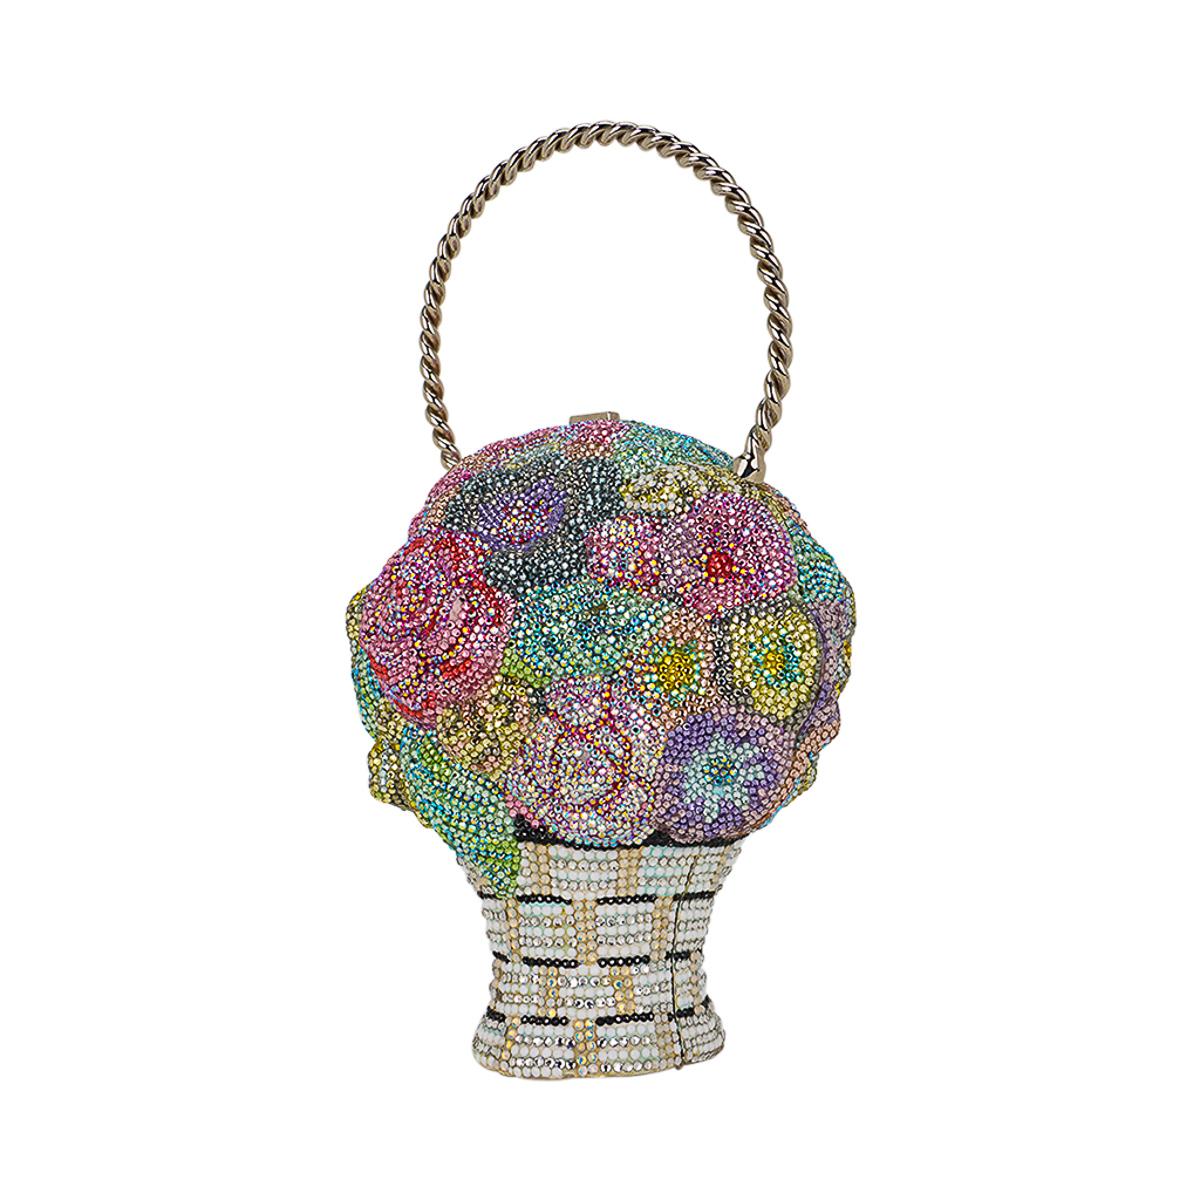 Judith Leiber Flower Bouquet Basket Minaudiere in mehrfarbigem, feinem Kristall.
Die Tasche ist wunderschön als Blumenstrauß gestaltet und mit handgesetzten Kristallen in Rosa, Blau, Grün und Weiß verziert.
Detailliert bis hin zum gewebten